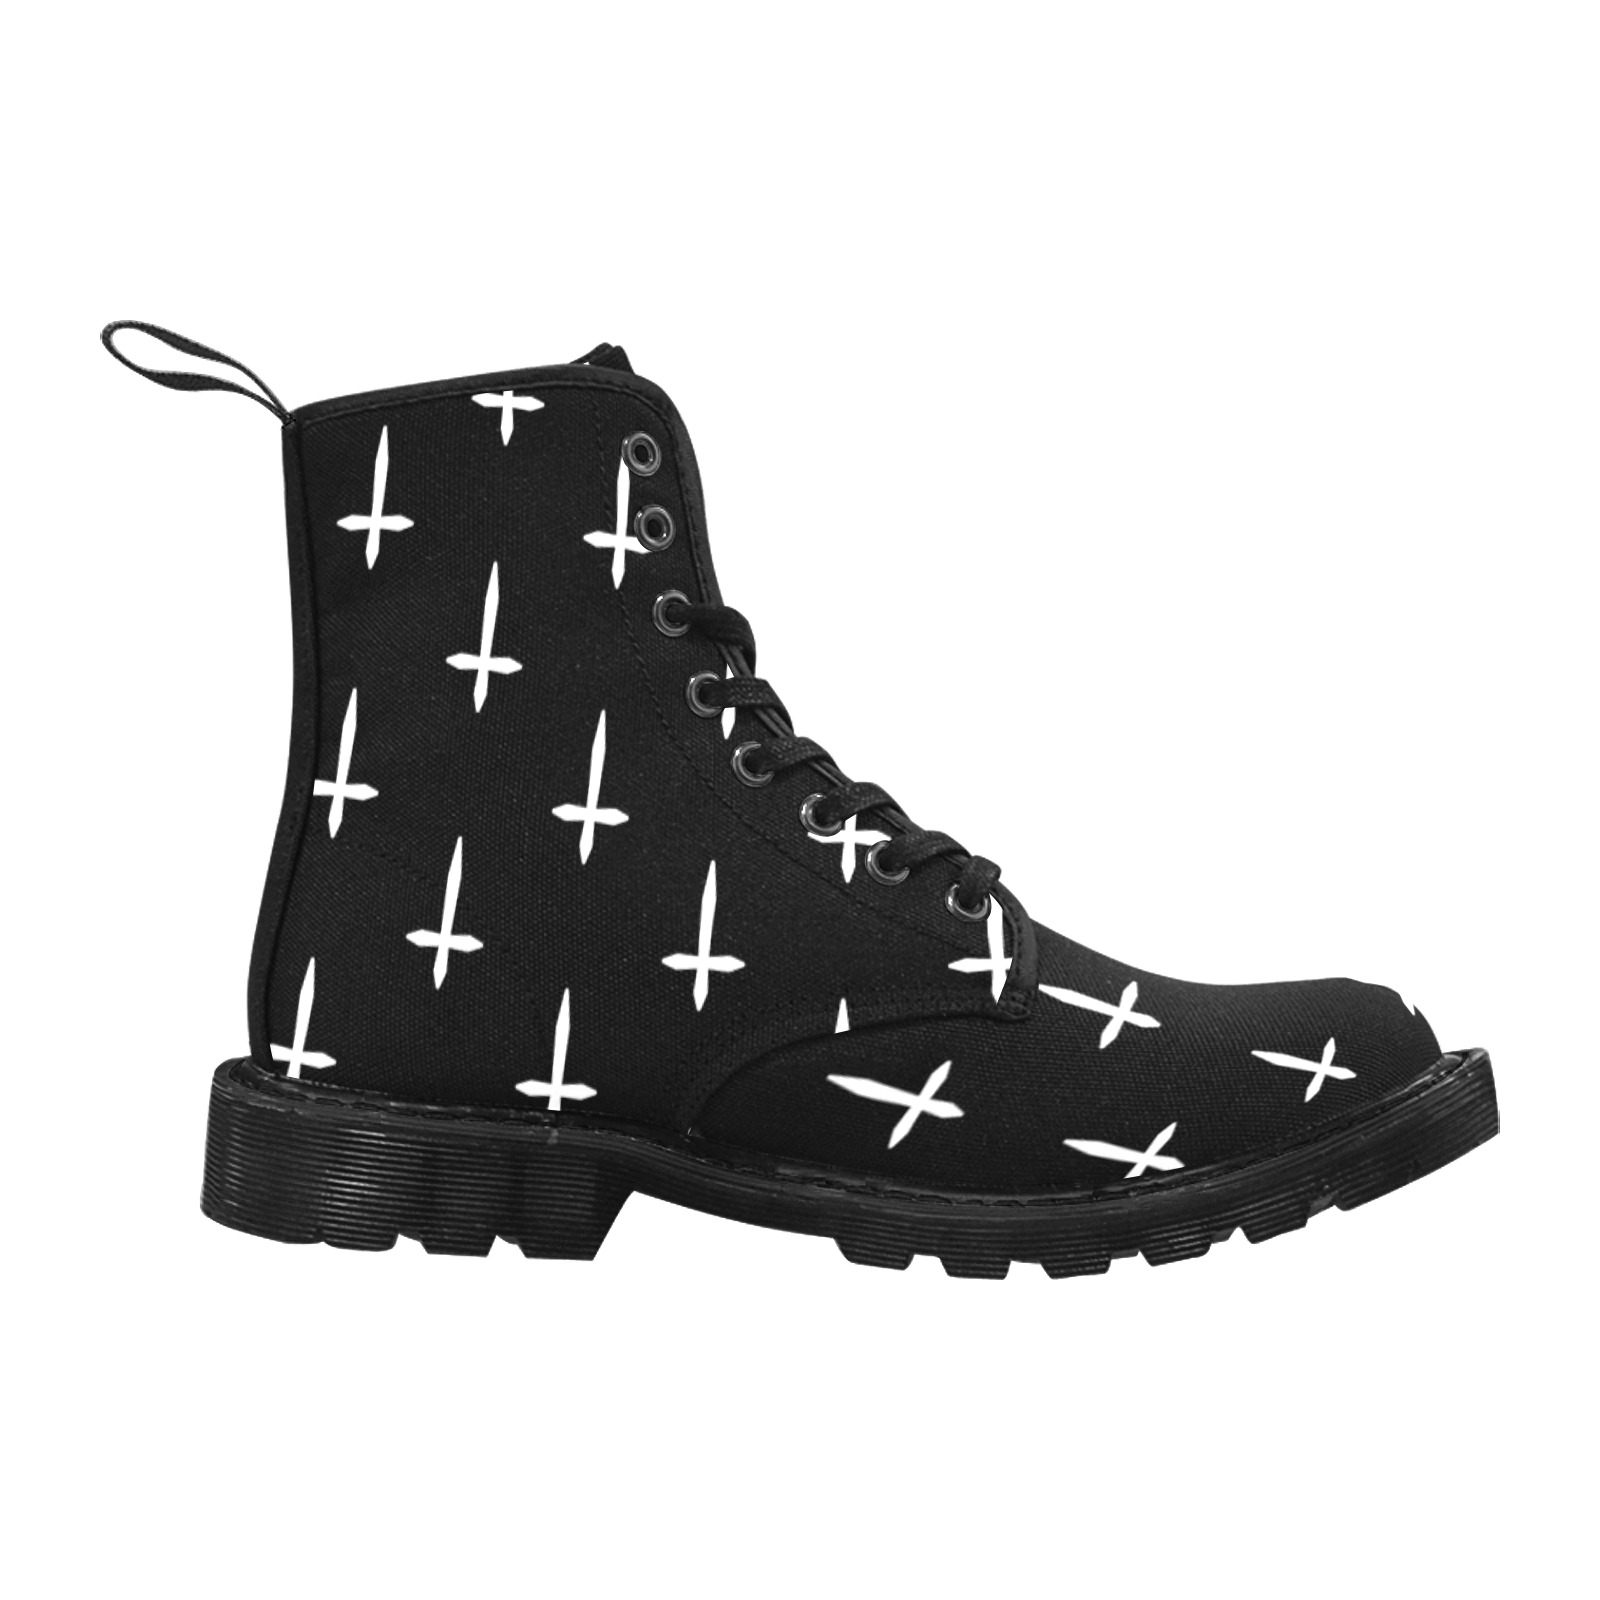 Inverted Cross Martin Boots for Men (Black) (Model 1203H)